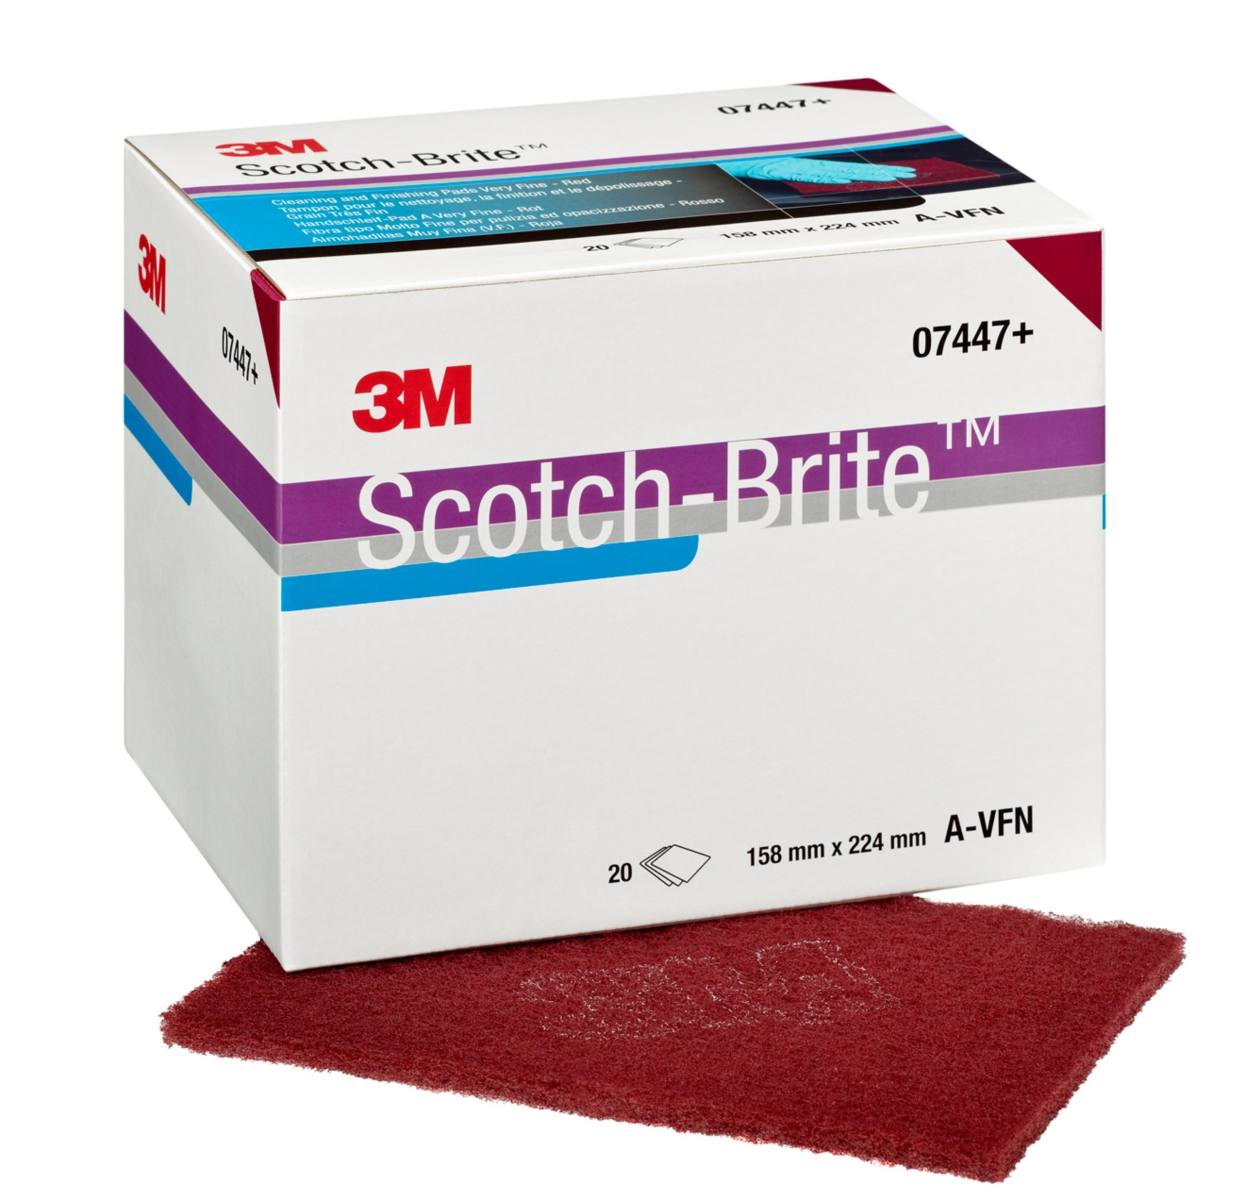 3M Scotch-Brite tampone manuale CF-HP 7447 , rosso, 158 mm x 224 mm, A, molto fine